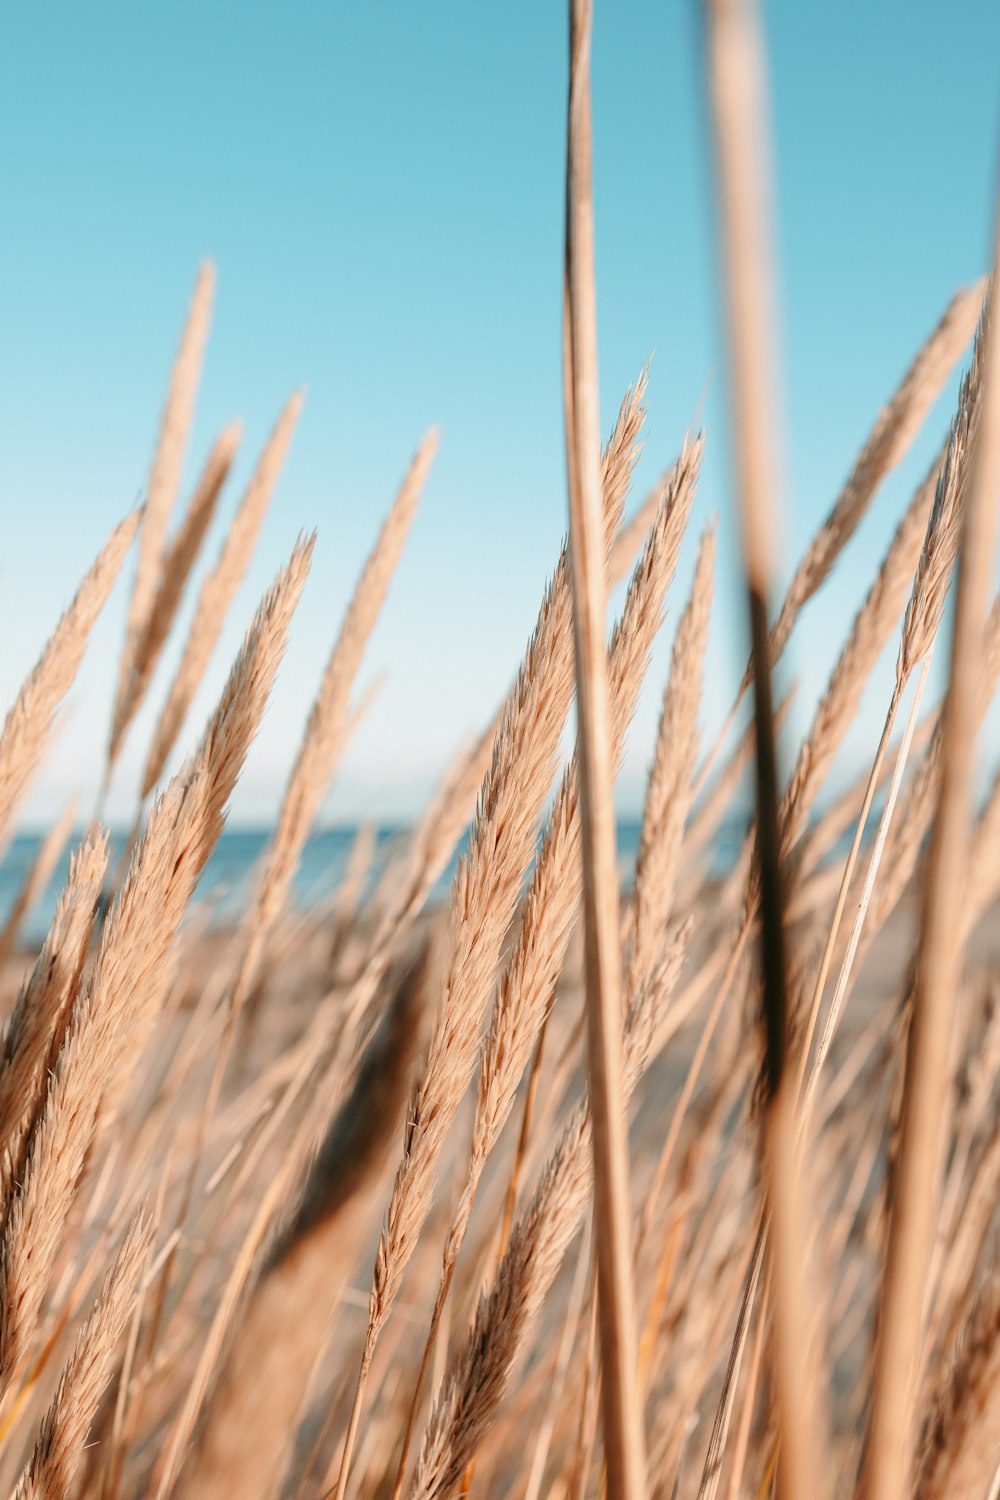 Campo de trigo marrón bajo cielo azul durante el día